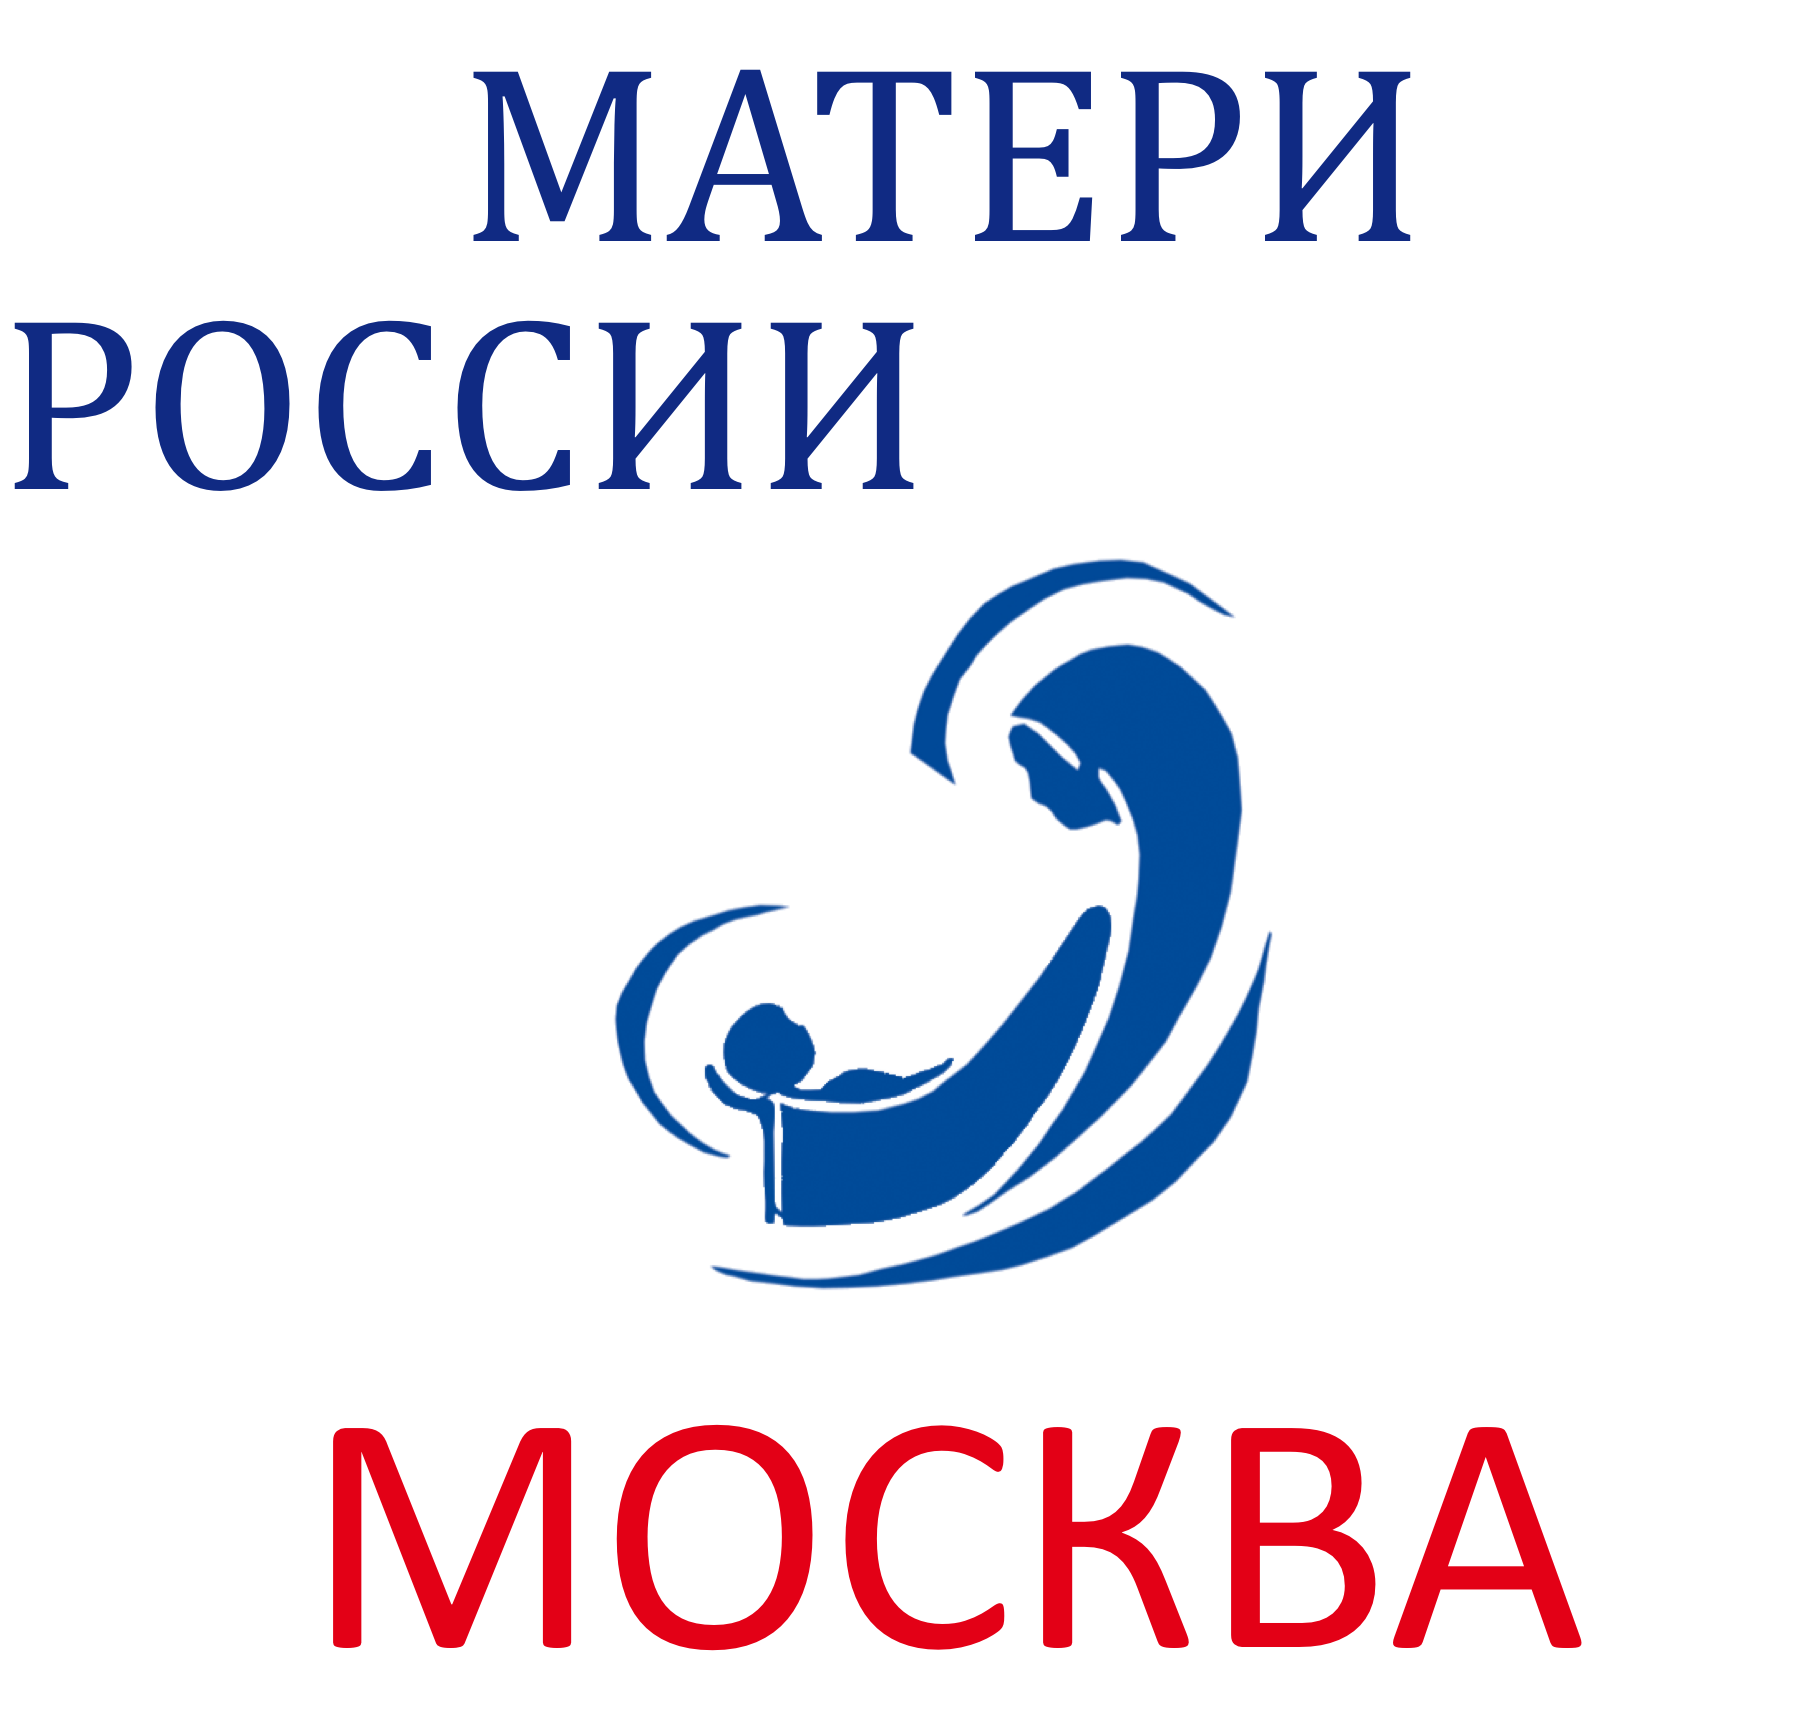 Движение Матери России Москва